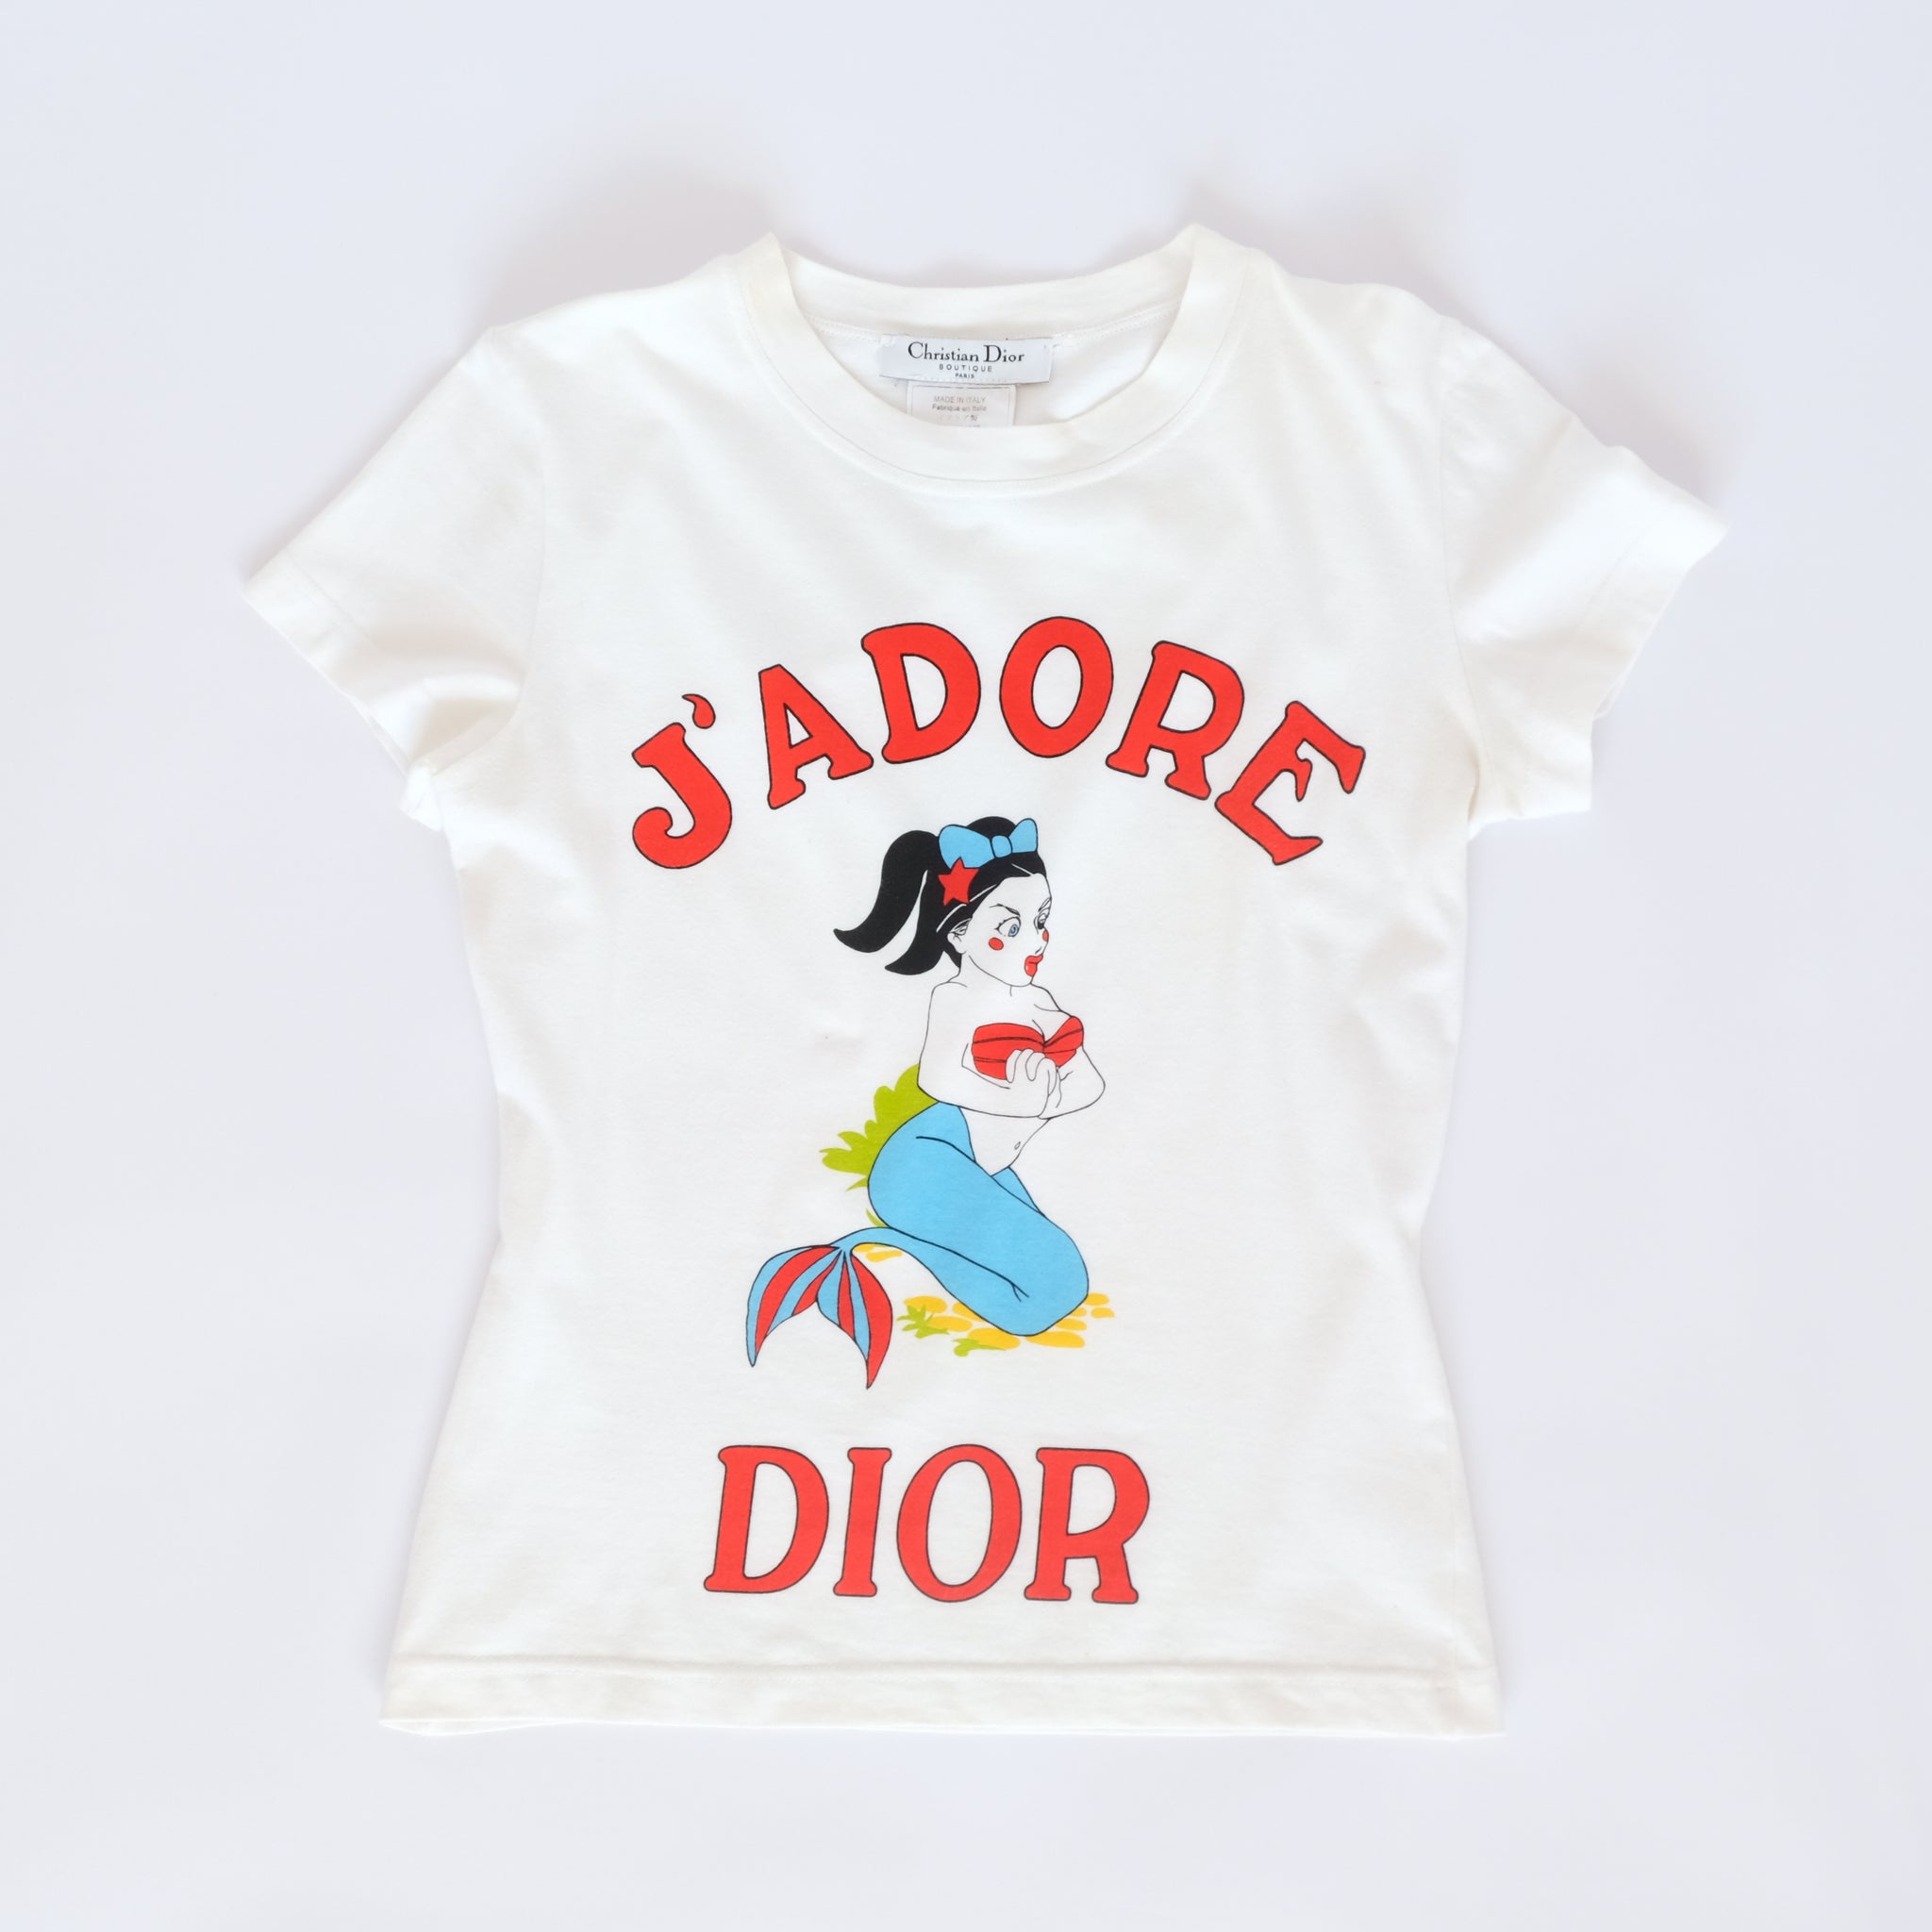 Tshirt Jadore Dior 1947 Vintage Top Rare  Etsy